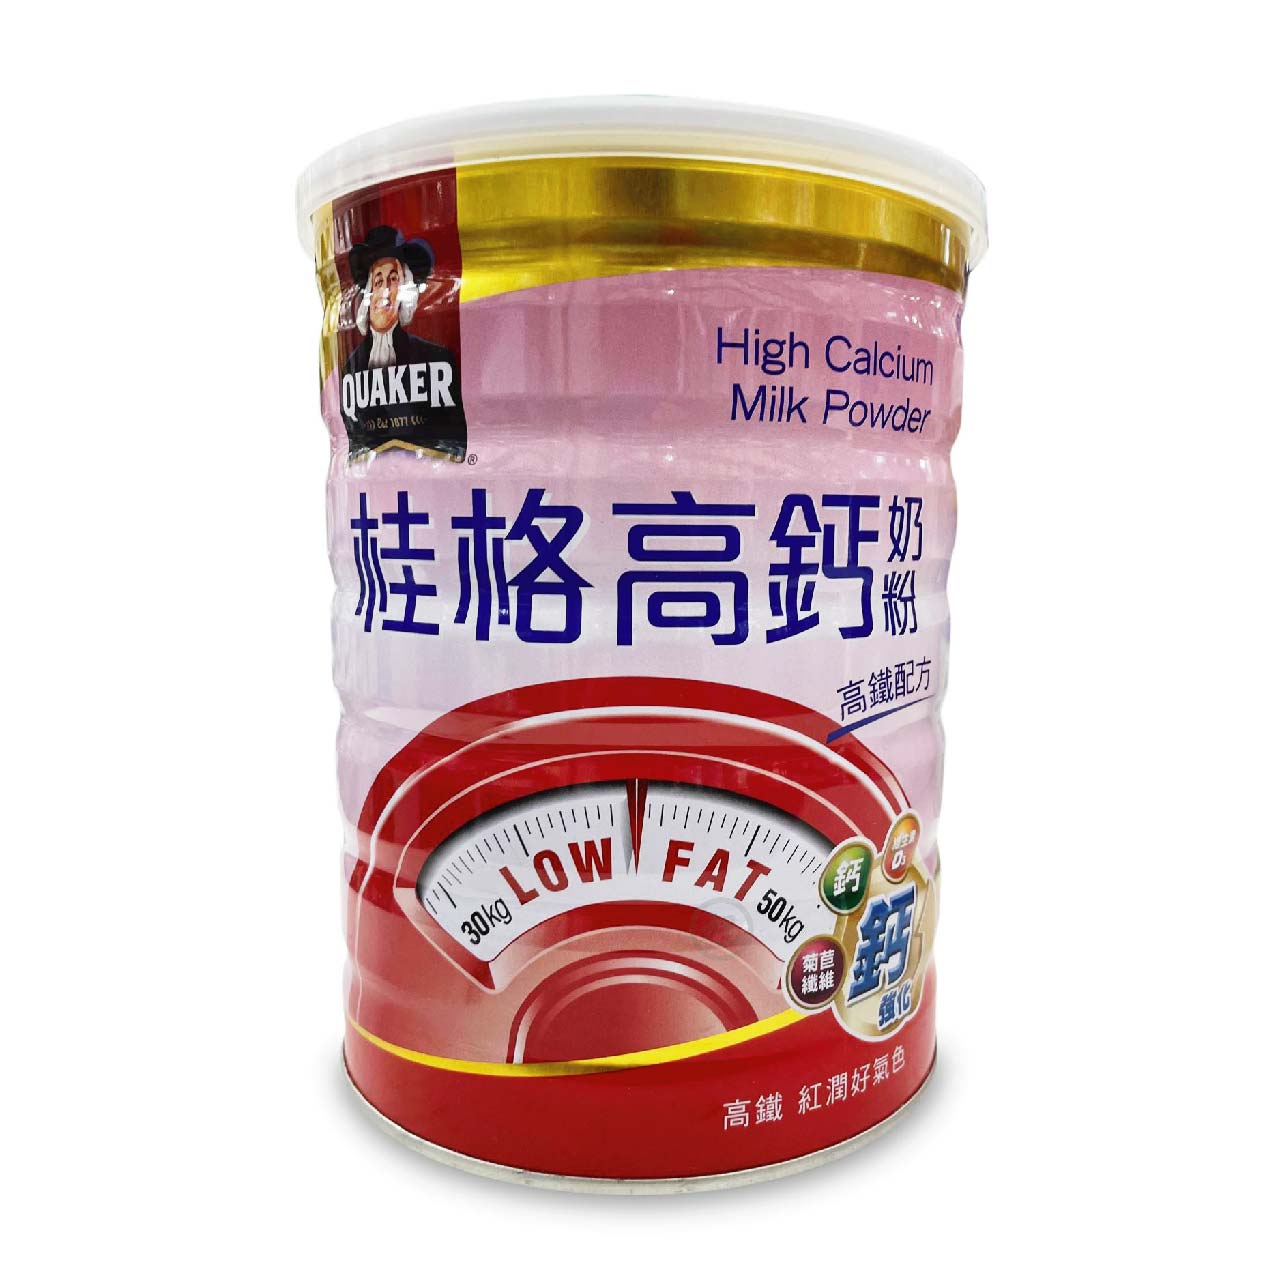 桂格高鈣奶粉 (高鐵配方) 750G/1.5KG *小柚子*